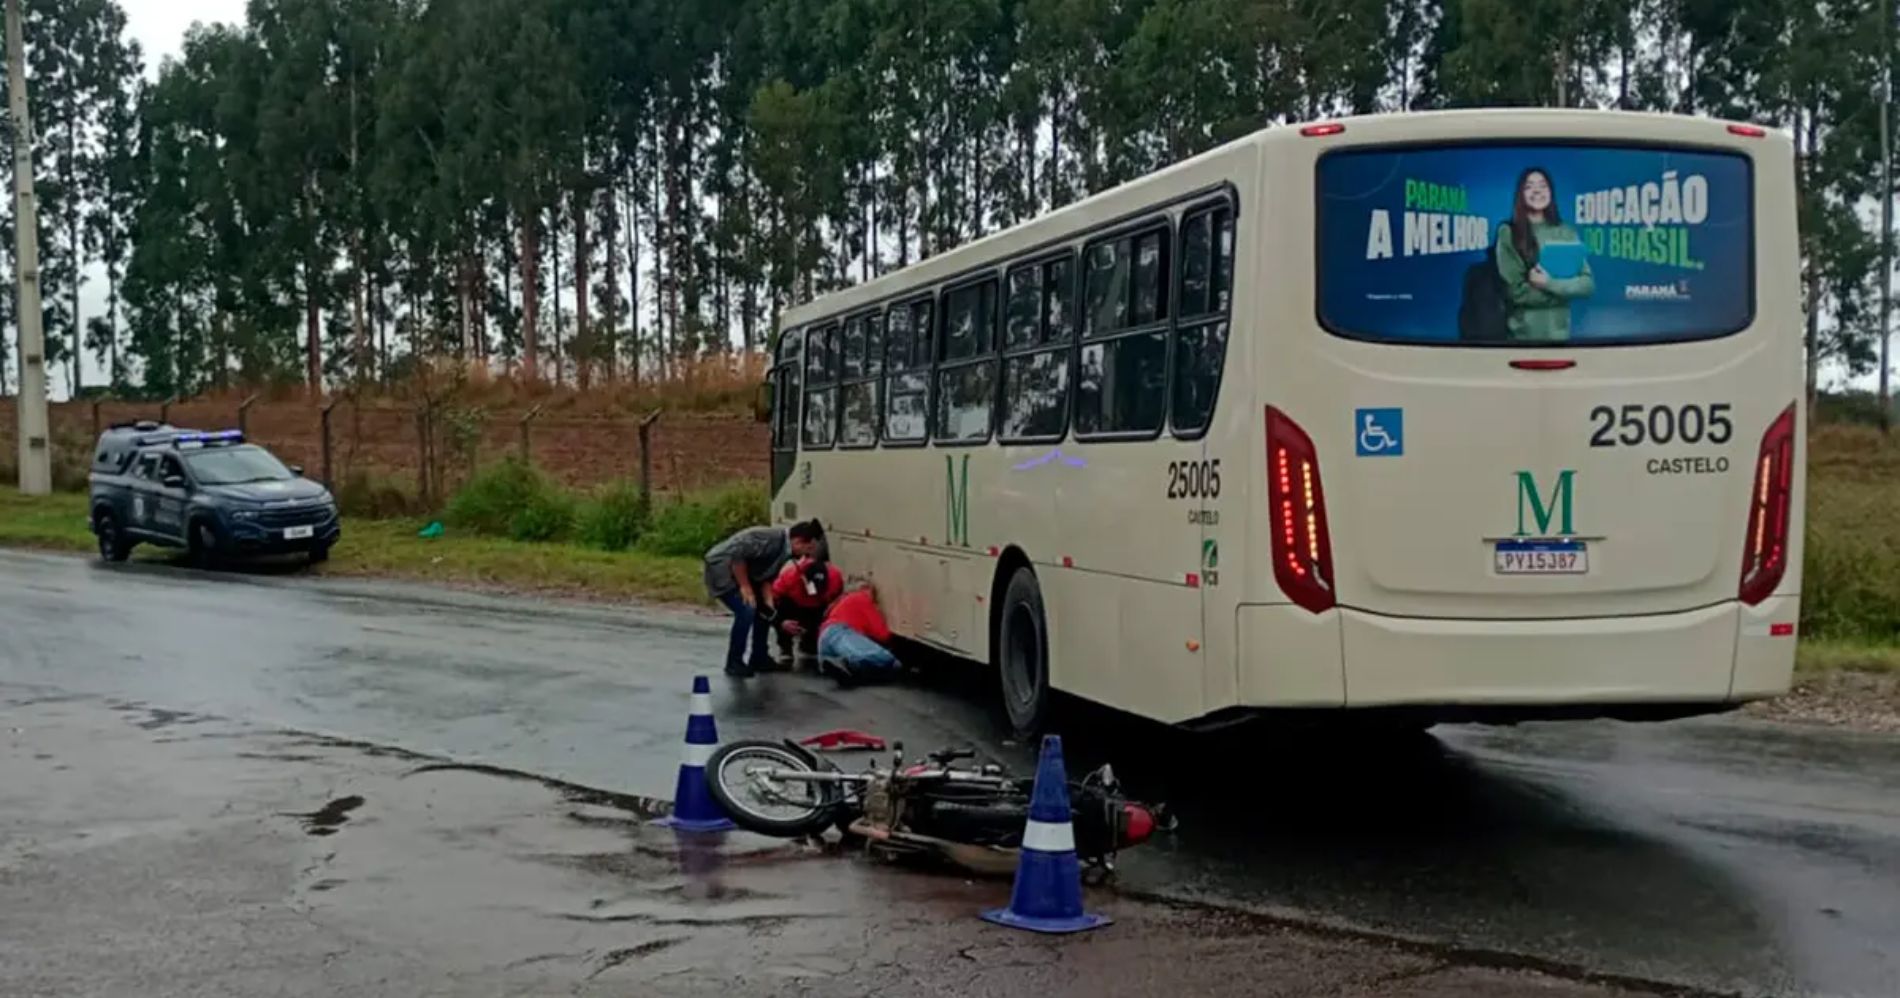 Motociclista vai parar embaixo de ônibus após colisão em Quatro Barras